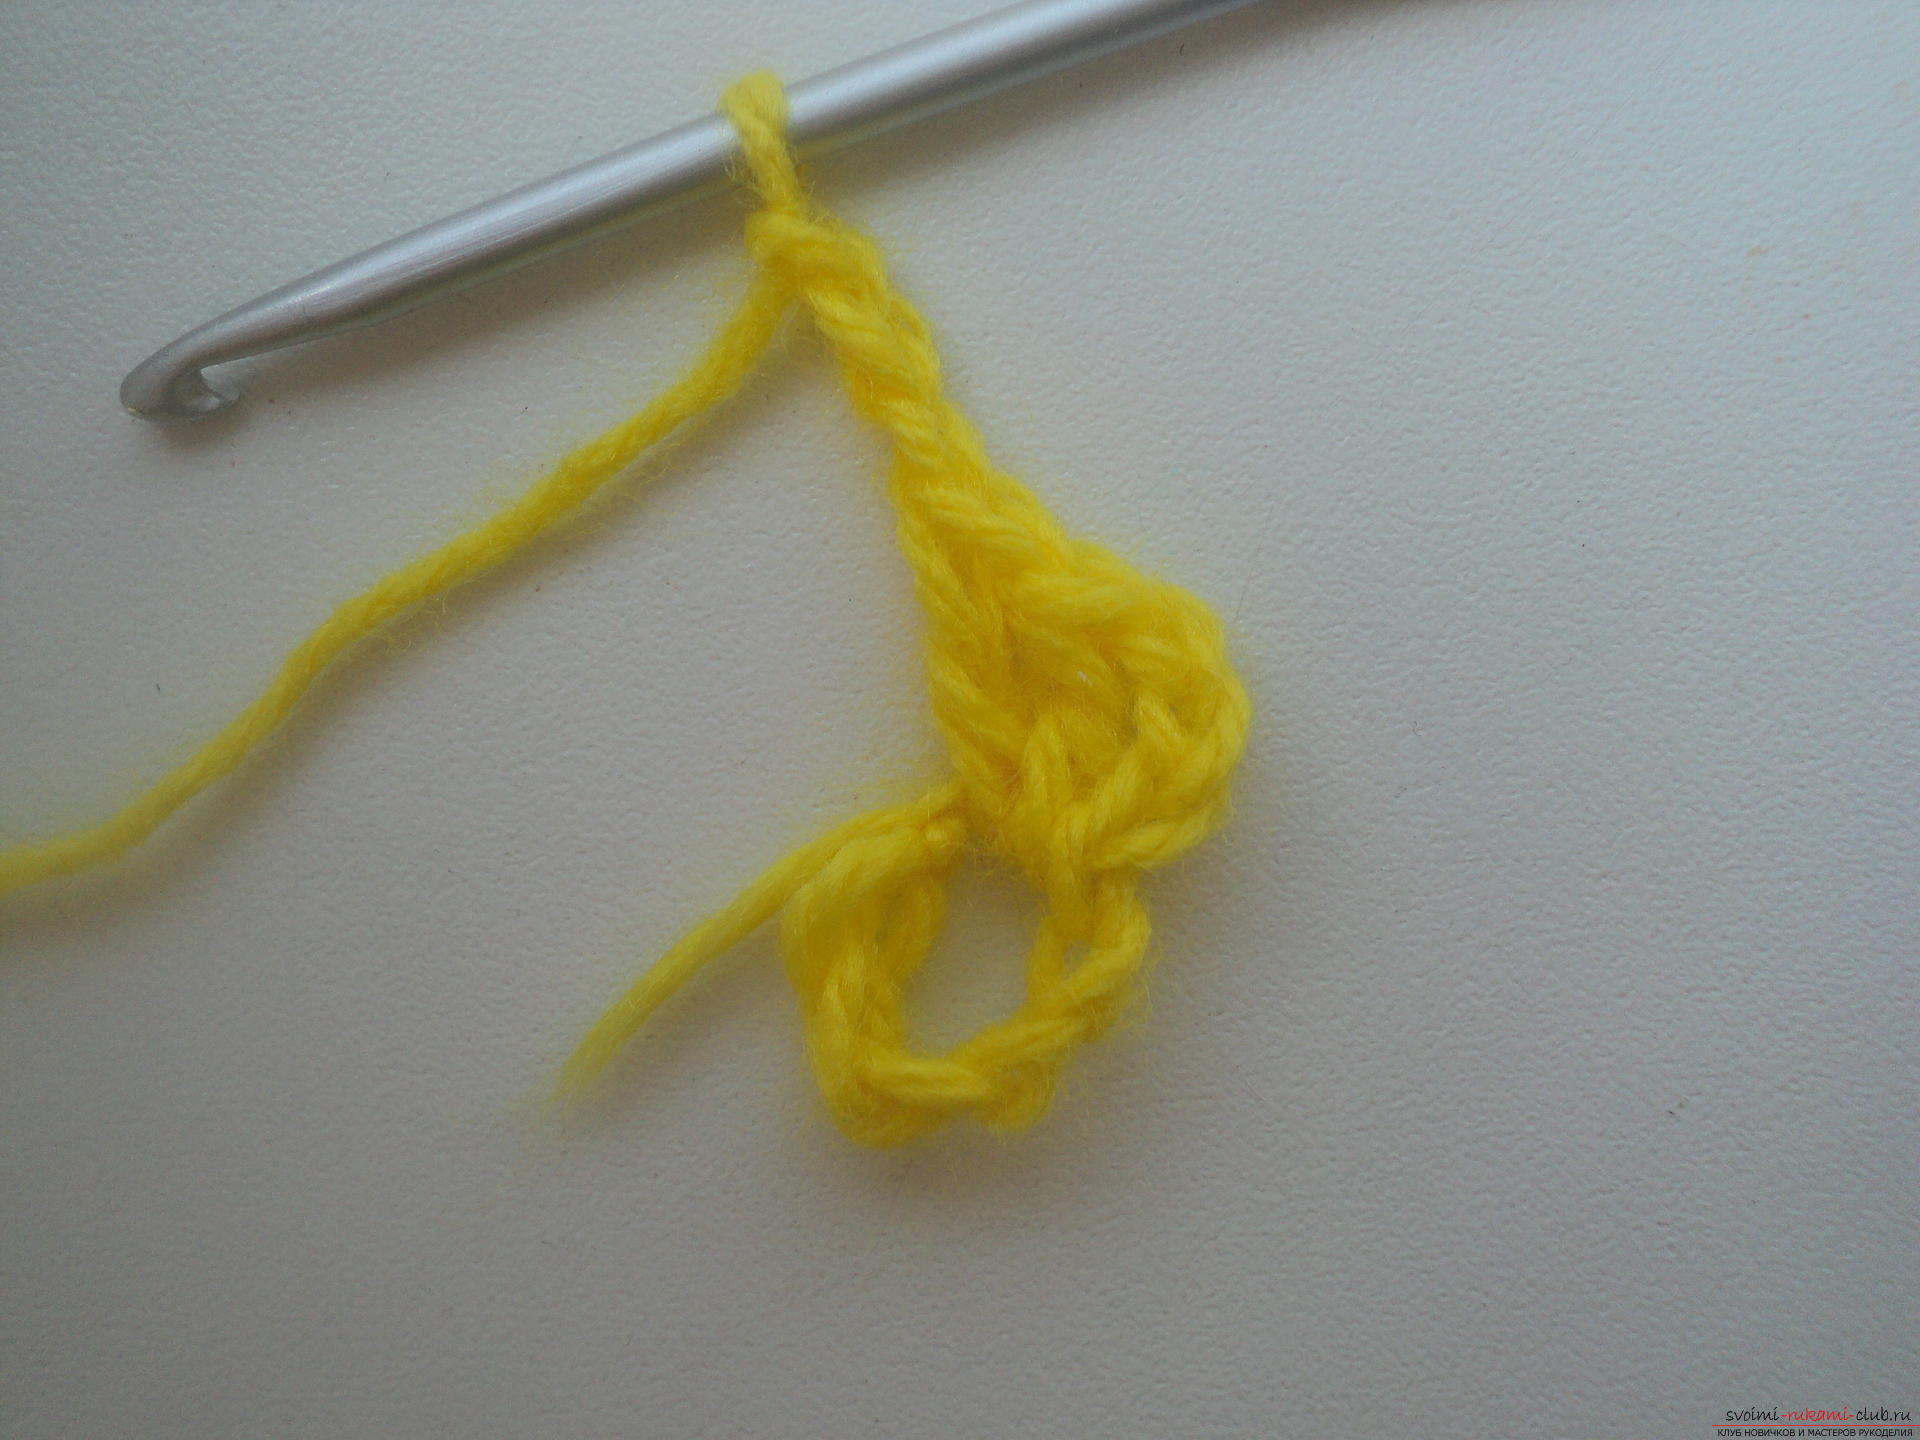 Ta szczegółowa klasa mistrzowska na szydełku dla początkujących nauczy się szydełkowania ażurowej chusty